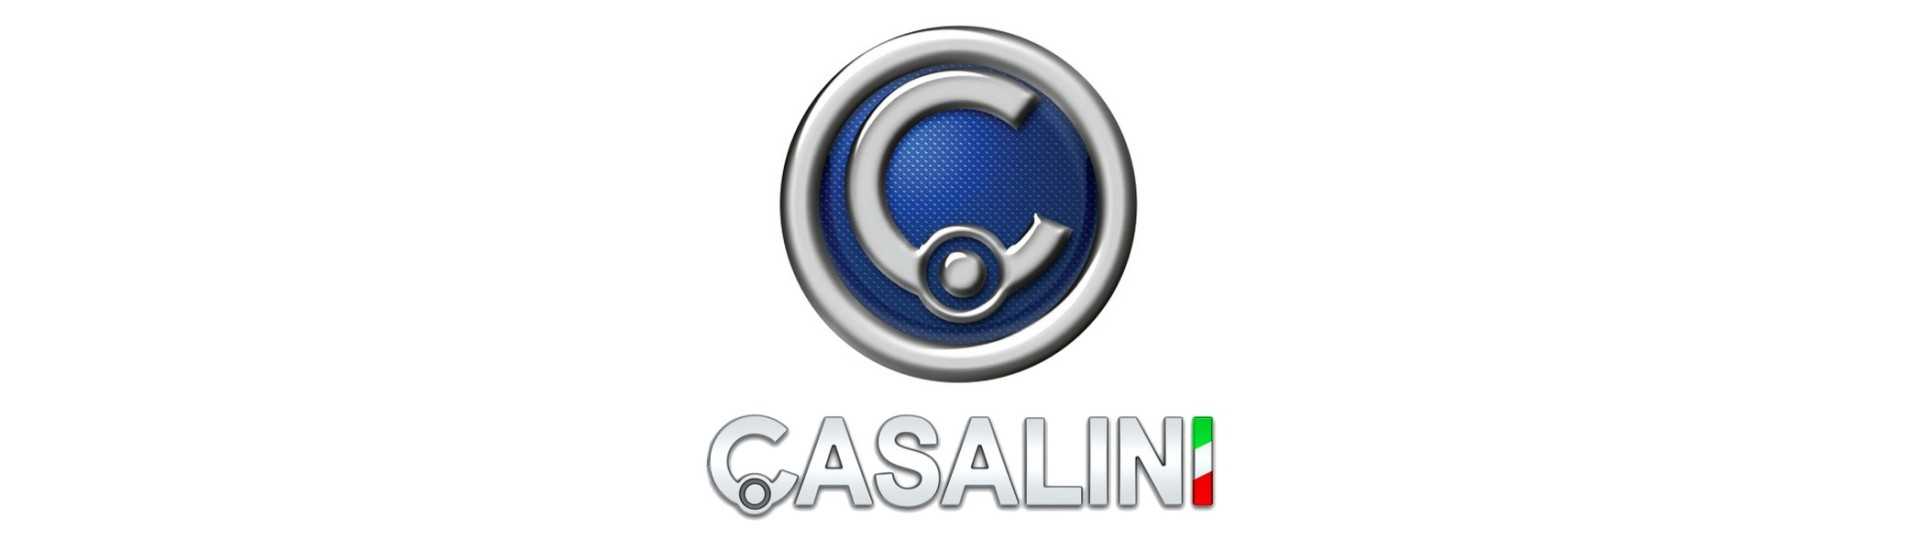 Suspensionsbrüche zum besten Preis für Auto ohne Lizenz Casalini